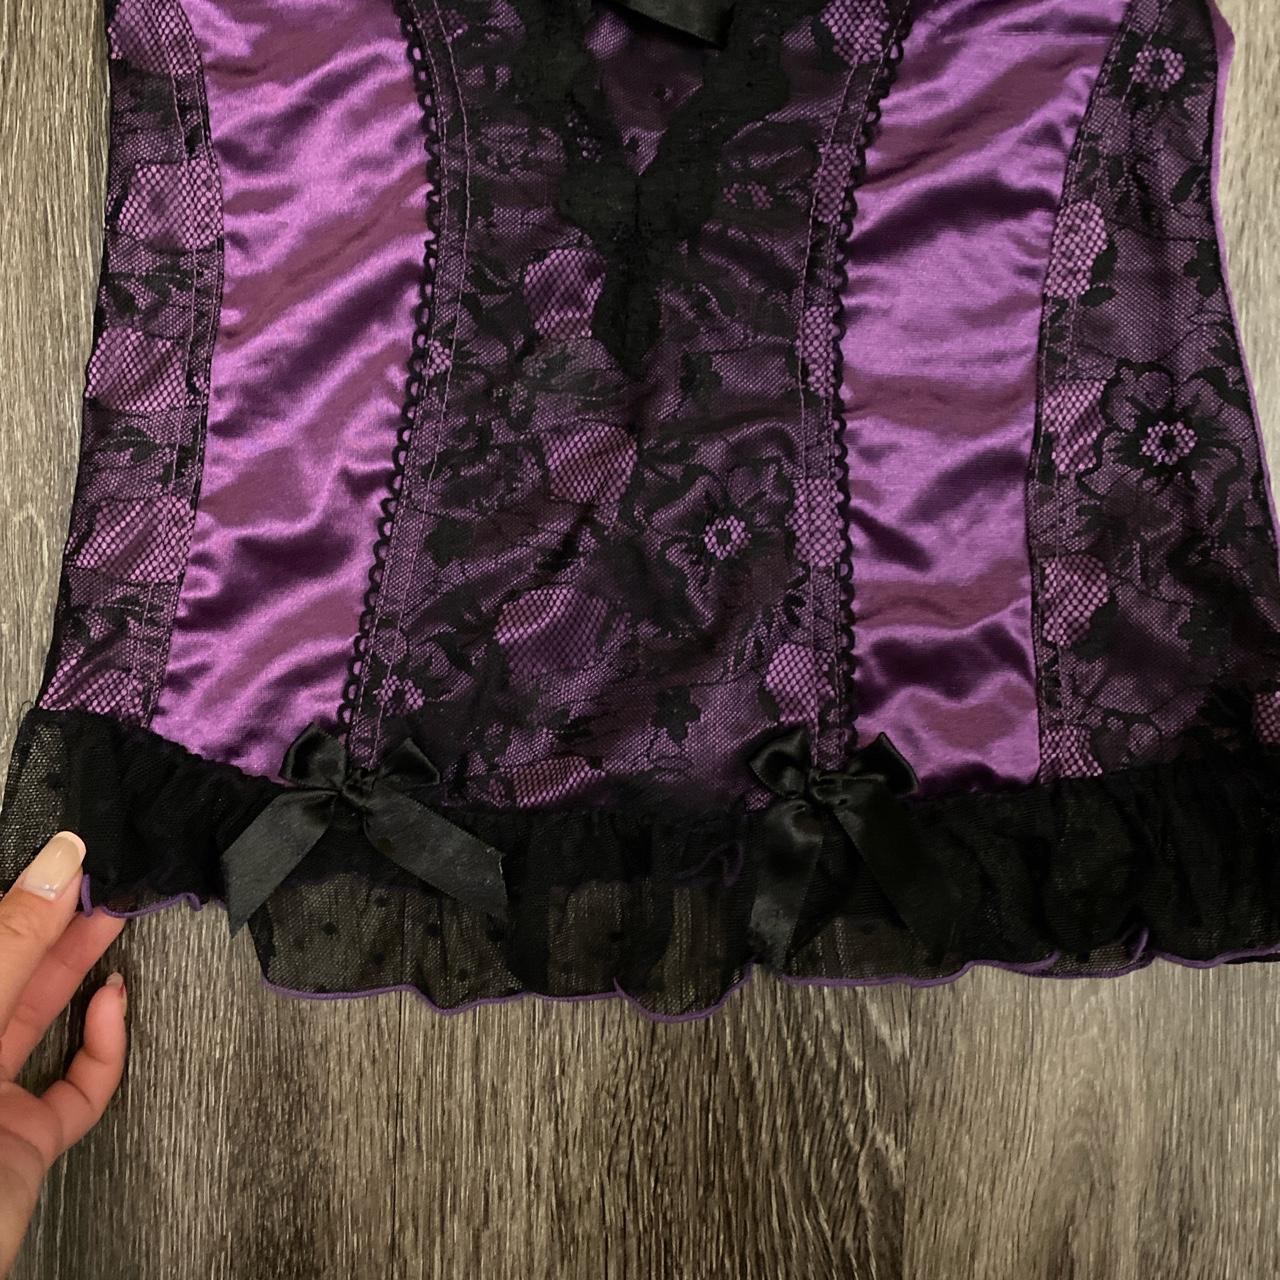 Product Image 2 - Purple lace corset lingerie top!